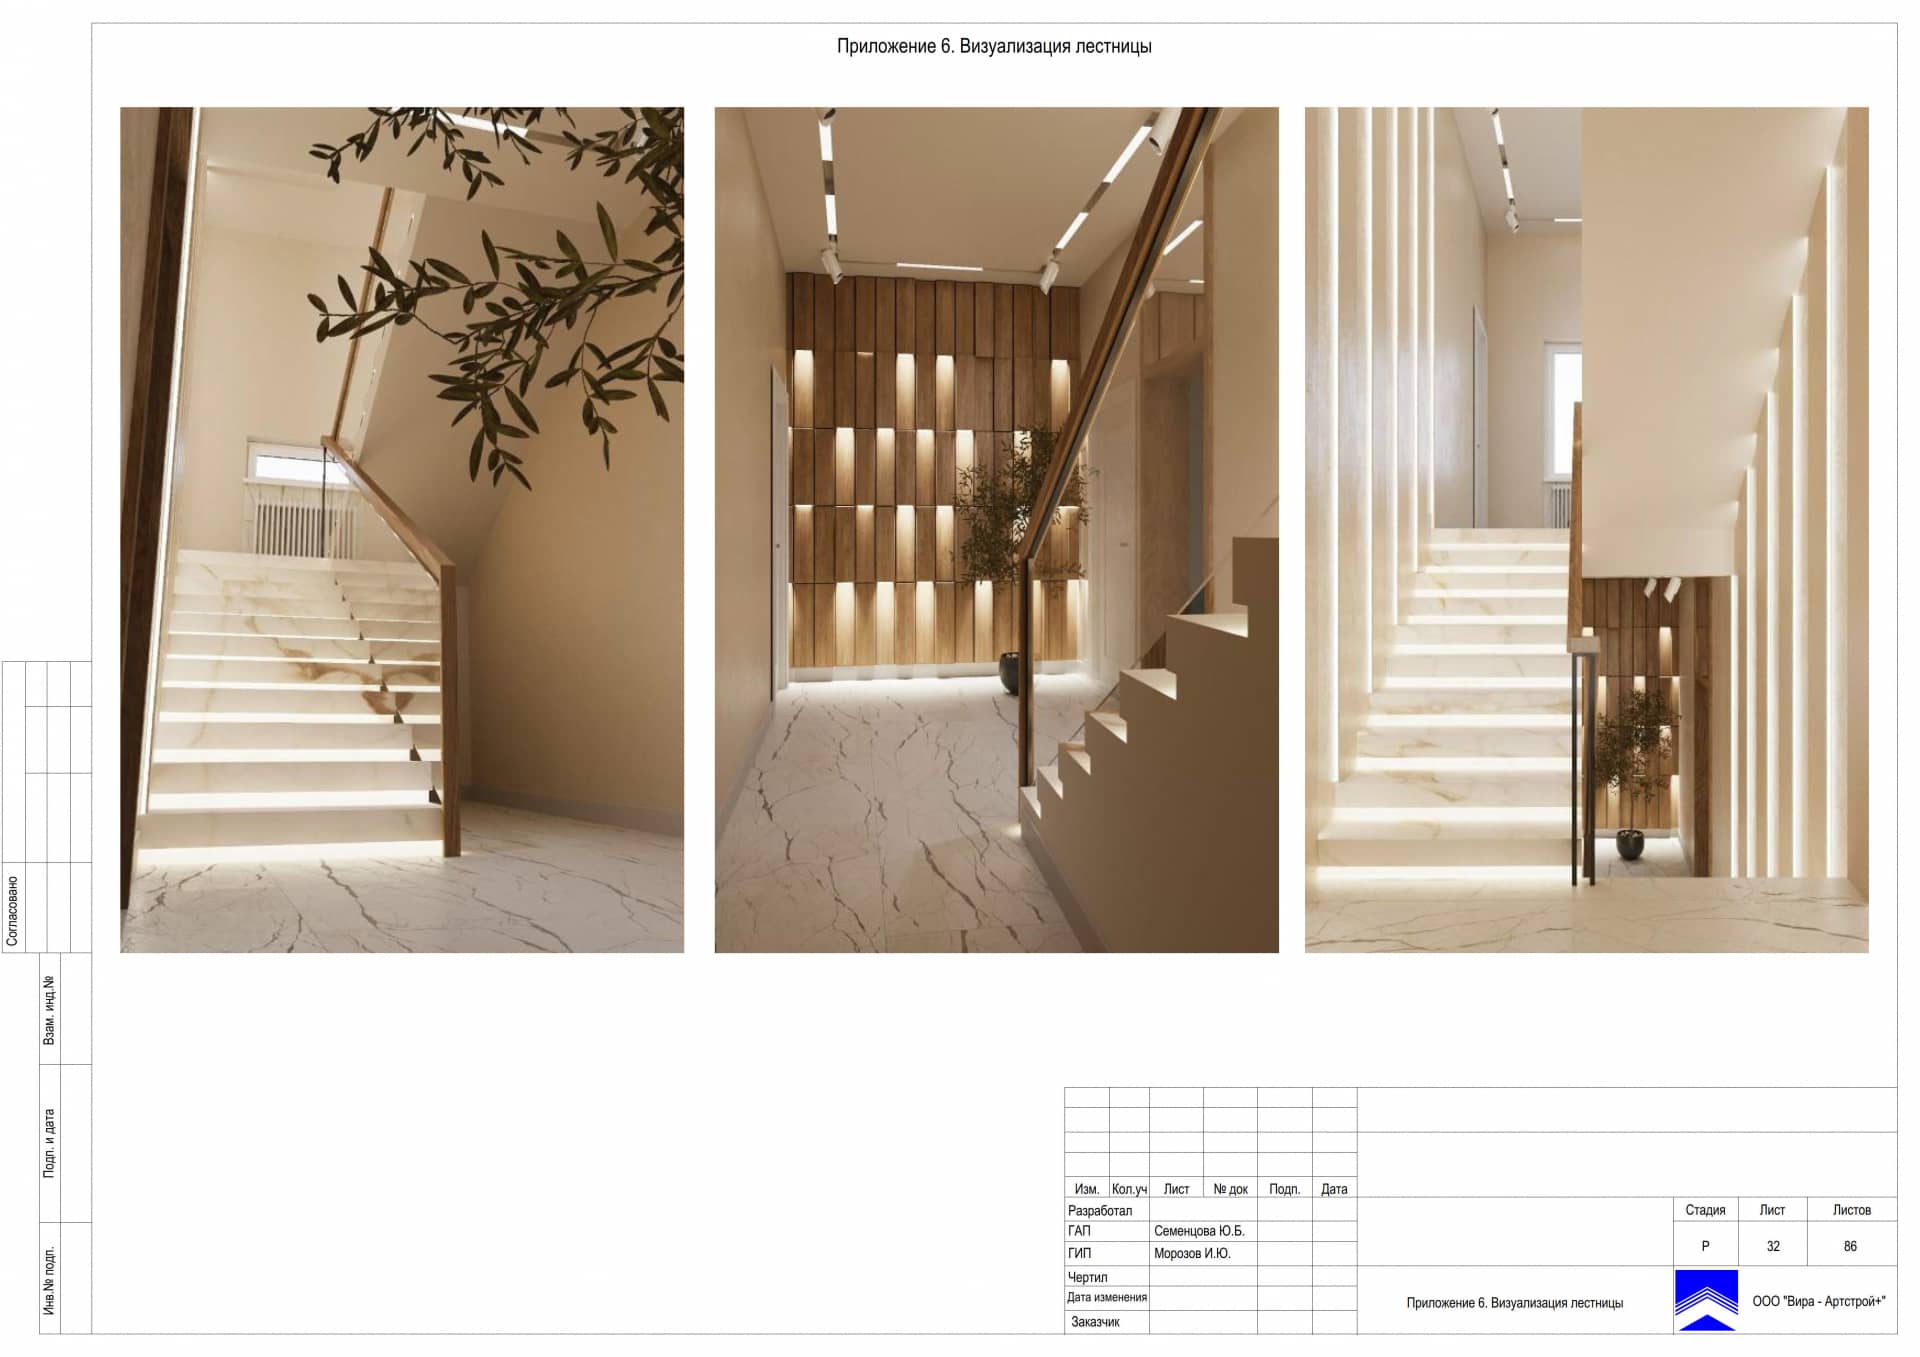 Приложение 6. Визуализация лестницы, дом 471 м² в КП «Сорочаны»